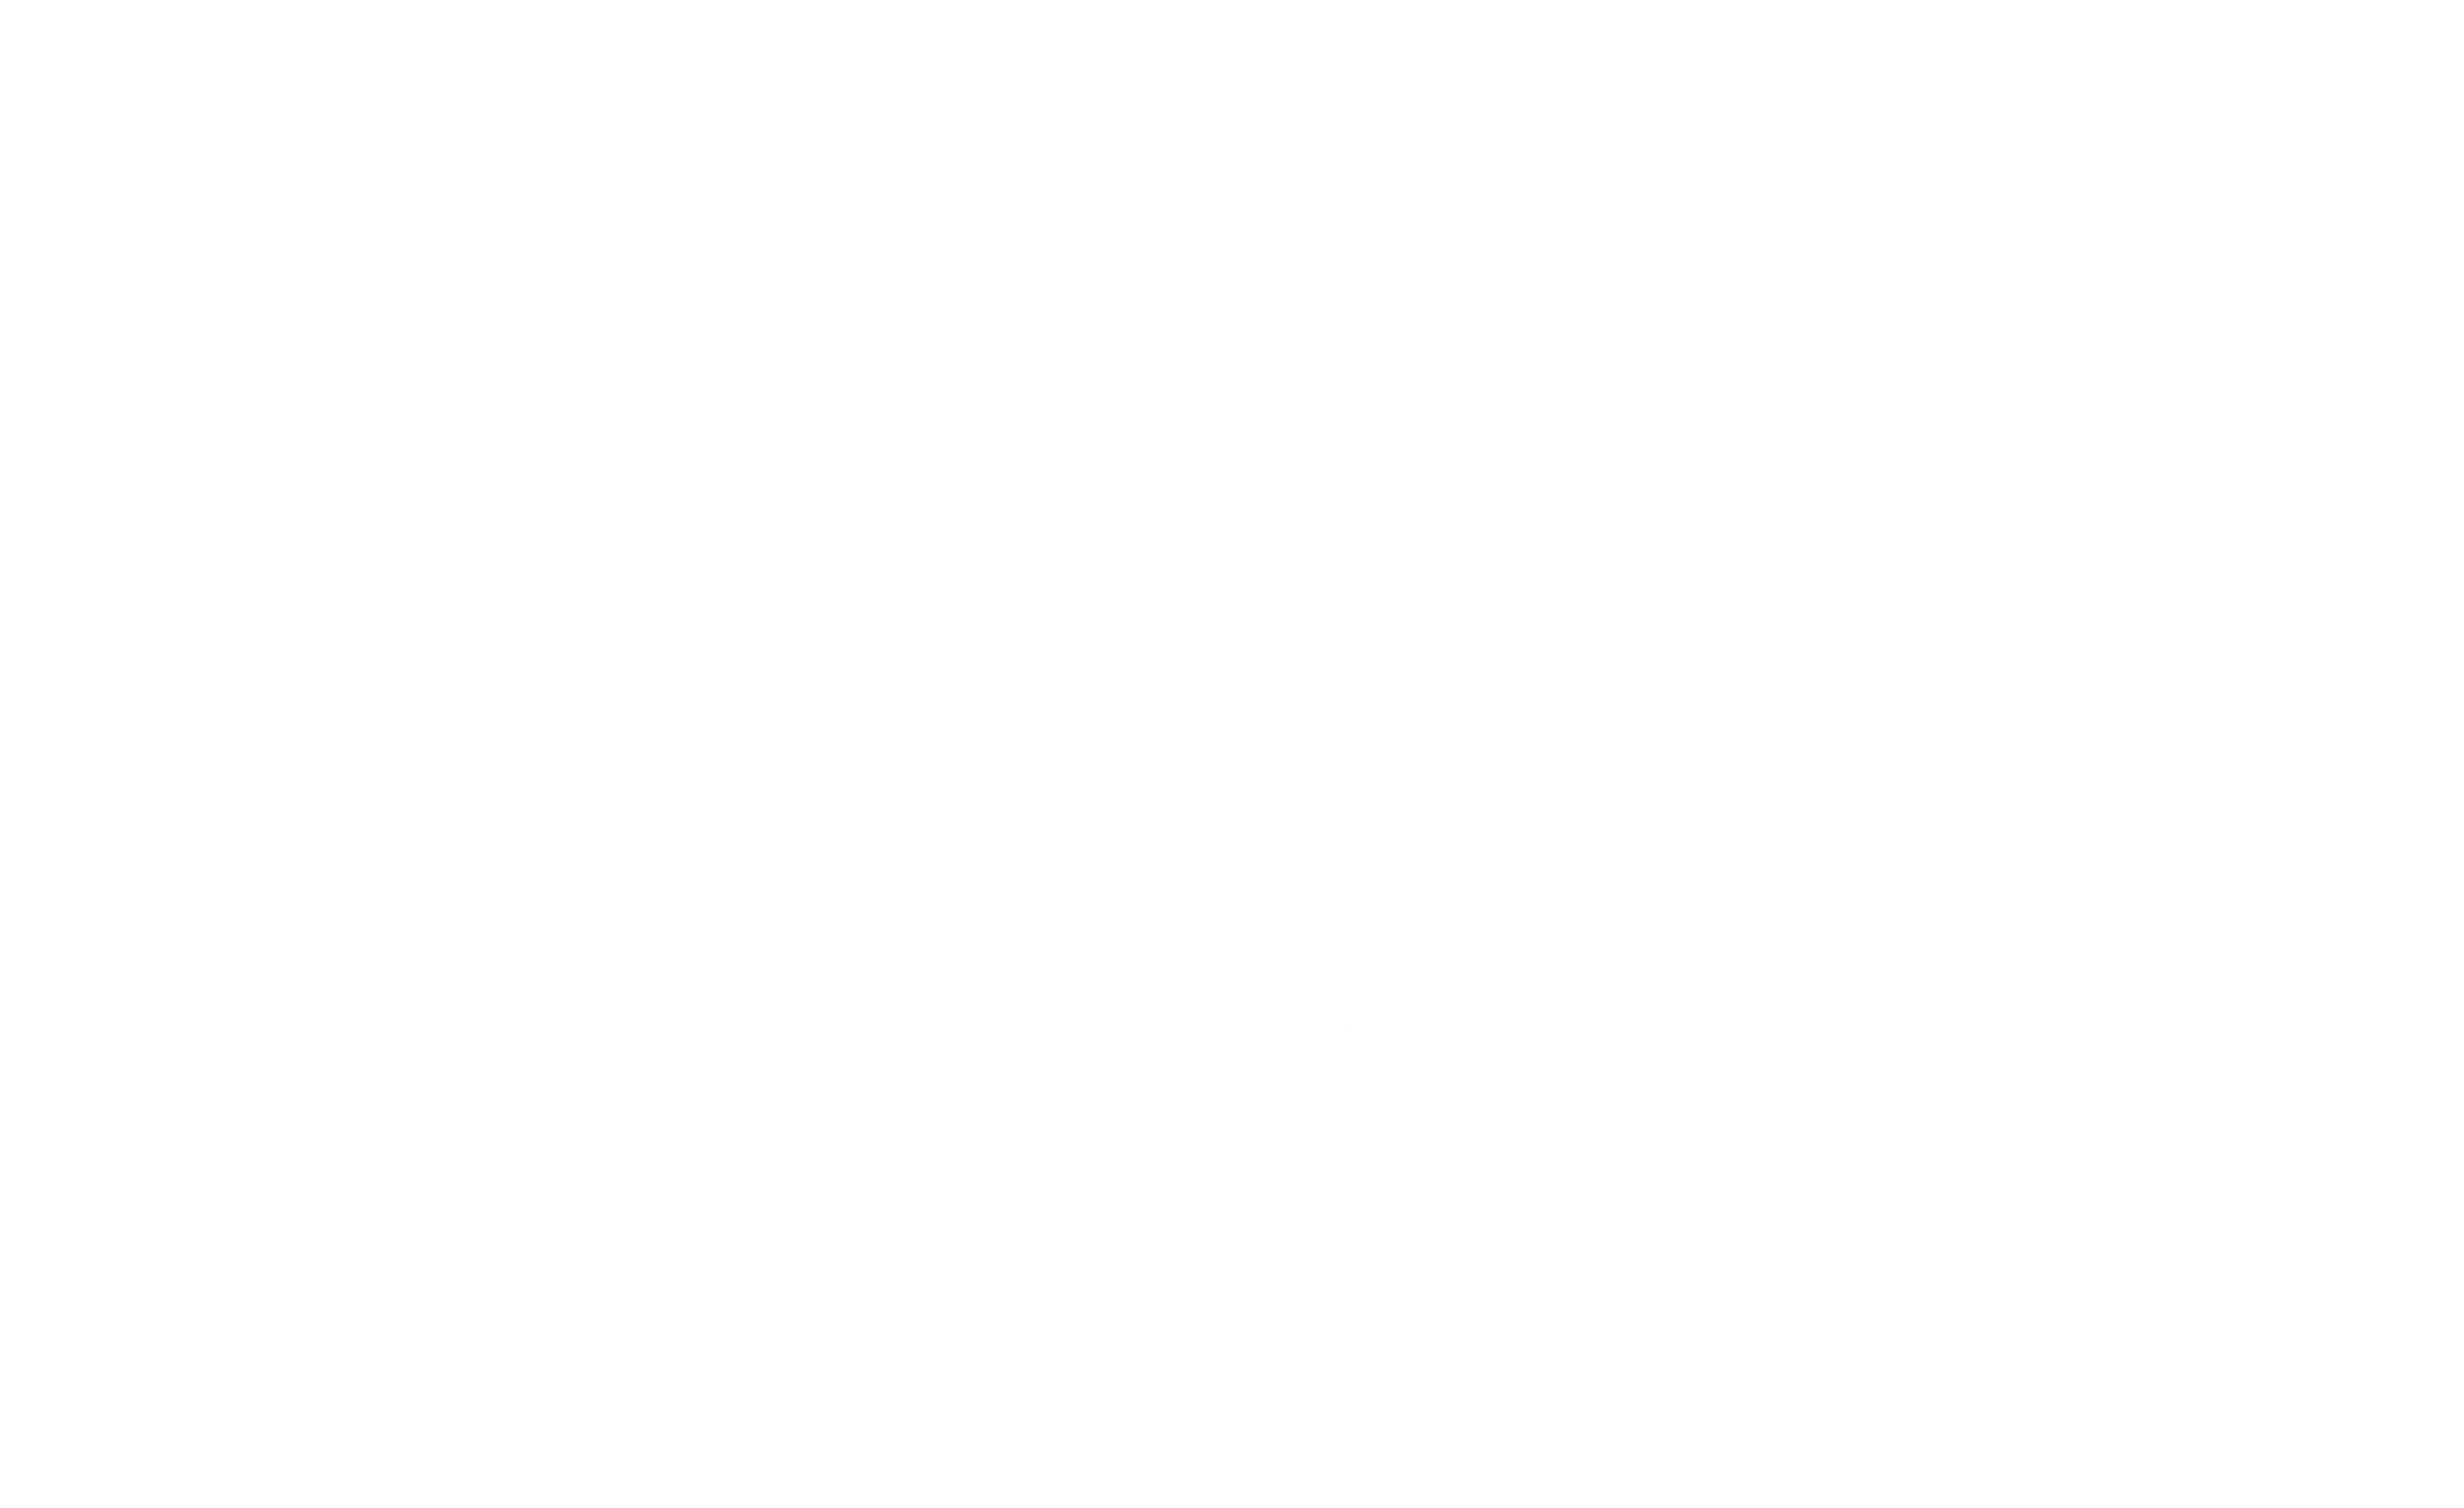 Guis & Partners Verzekeringen logo